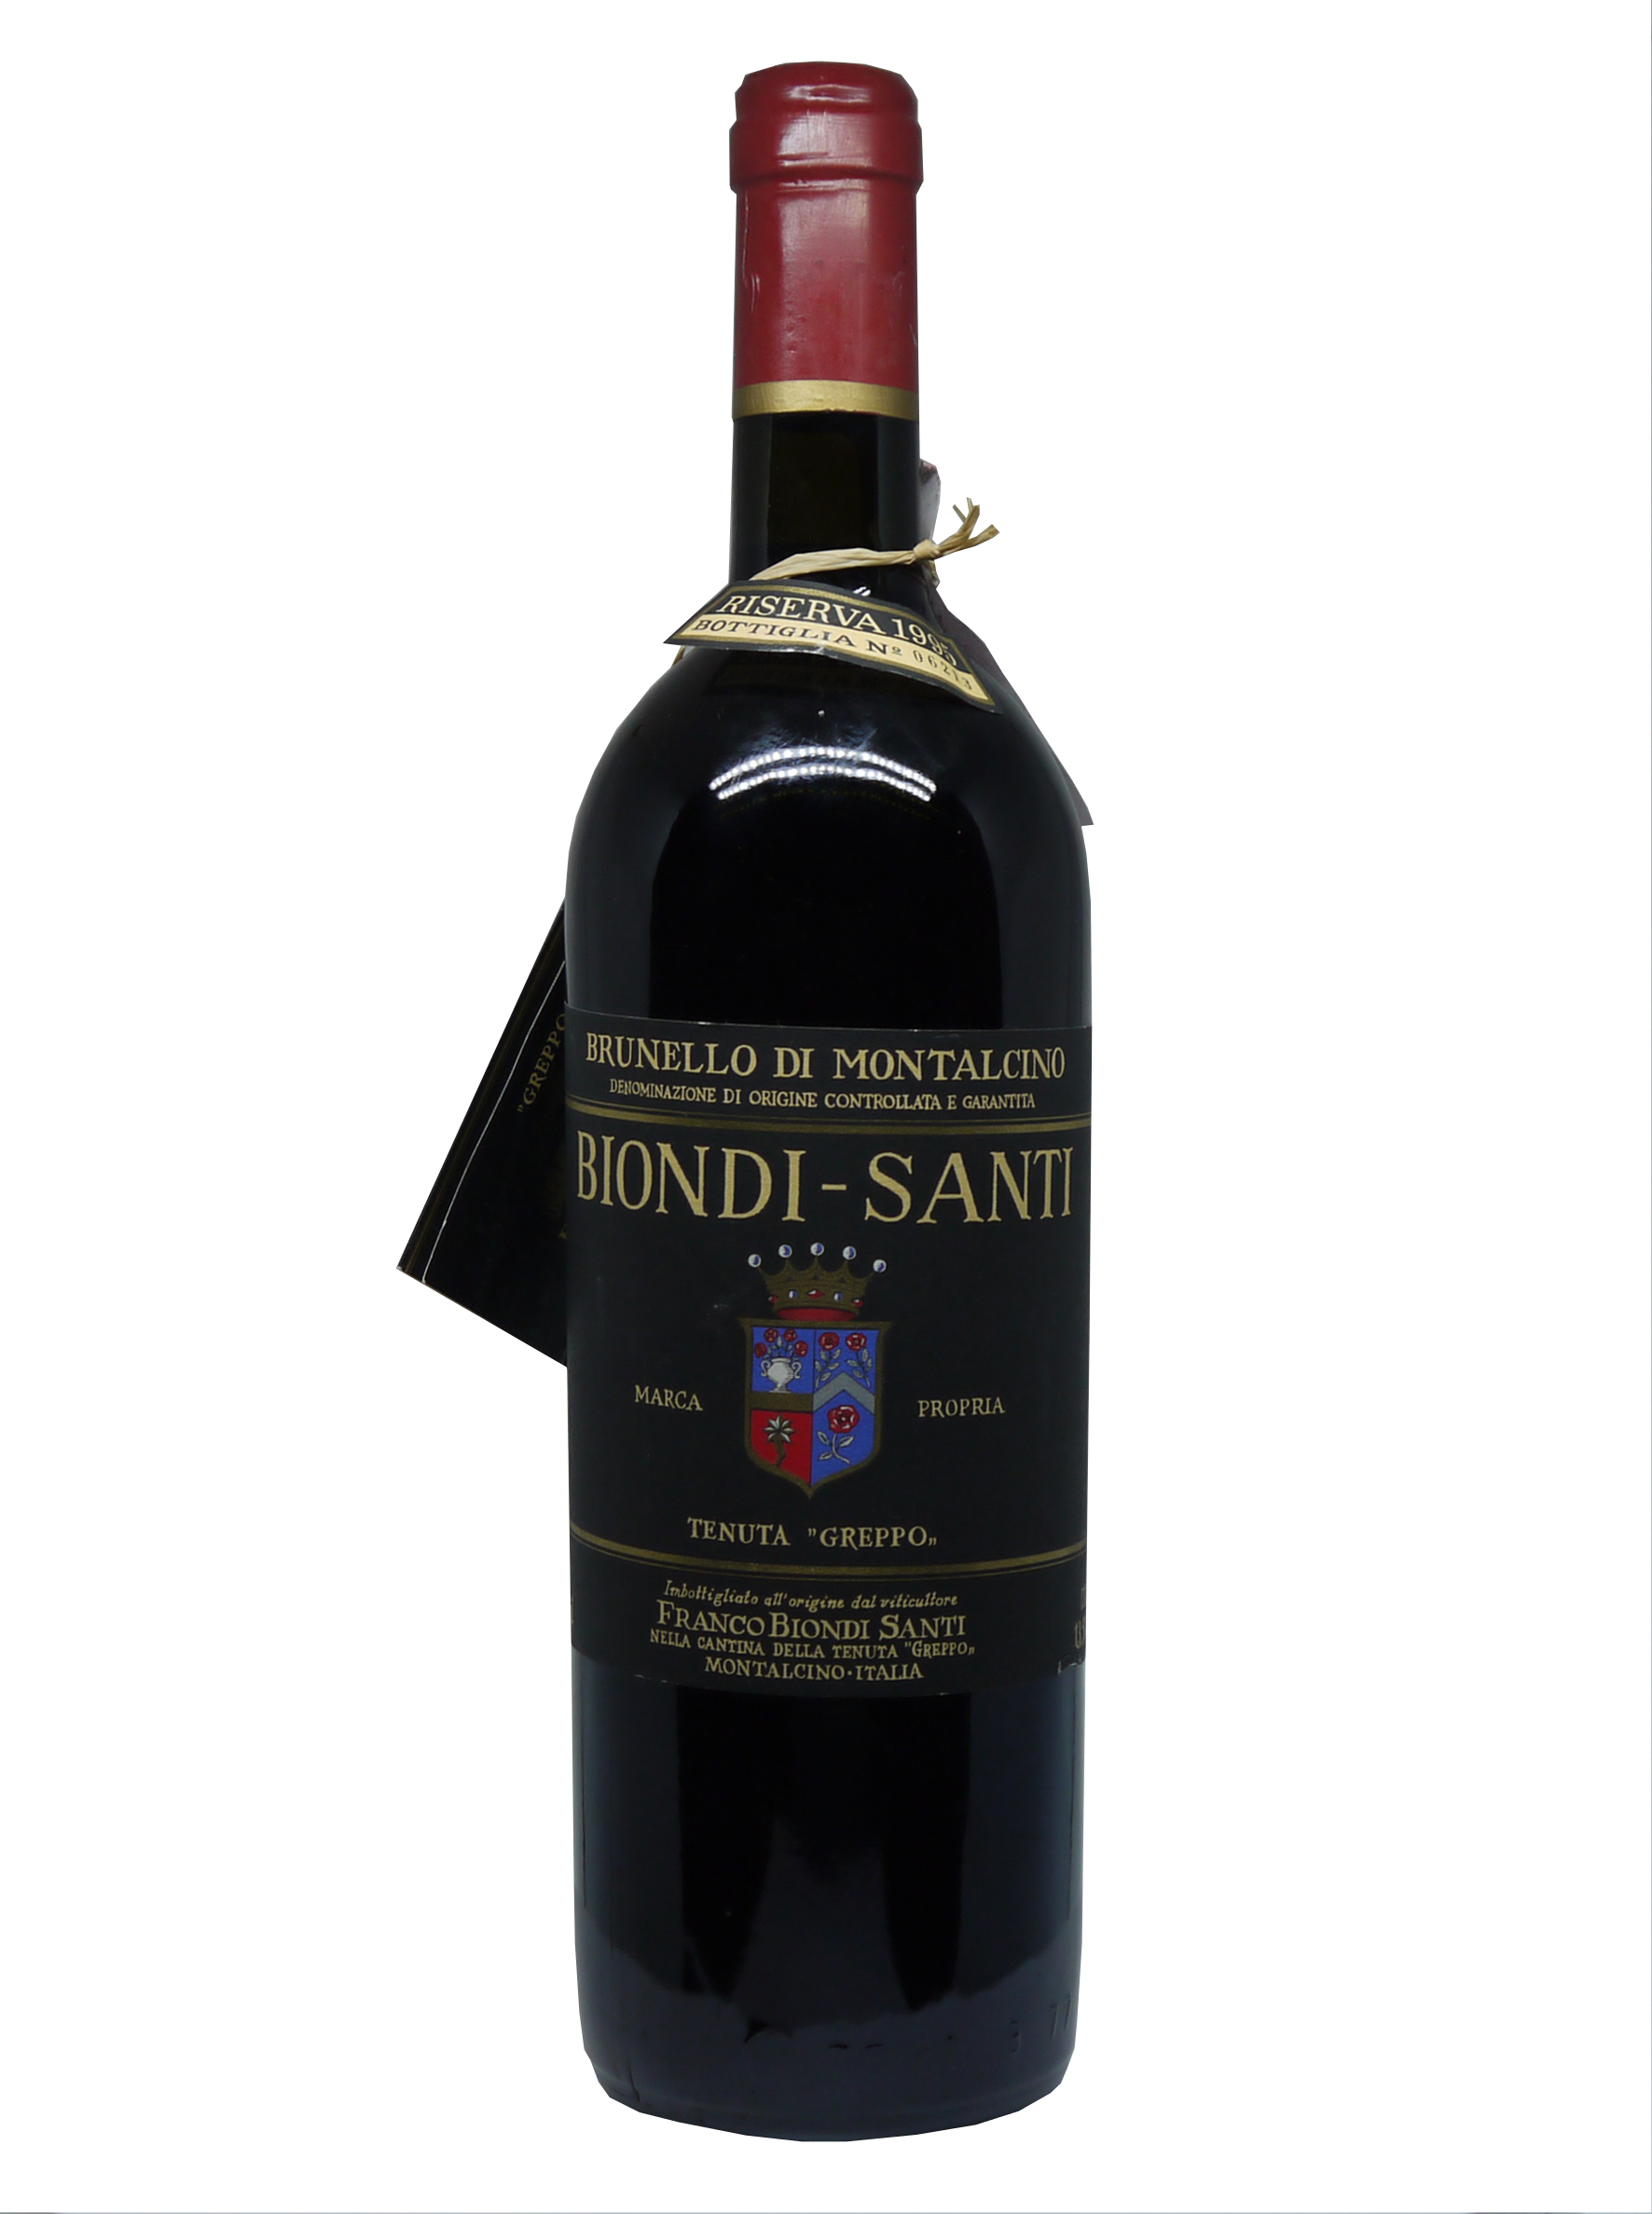 Bondi-Santi Brunello Riserva 1995